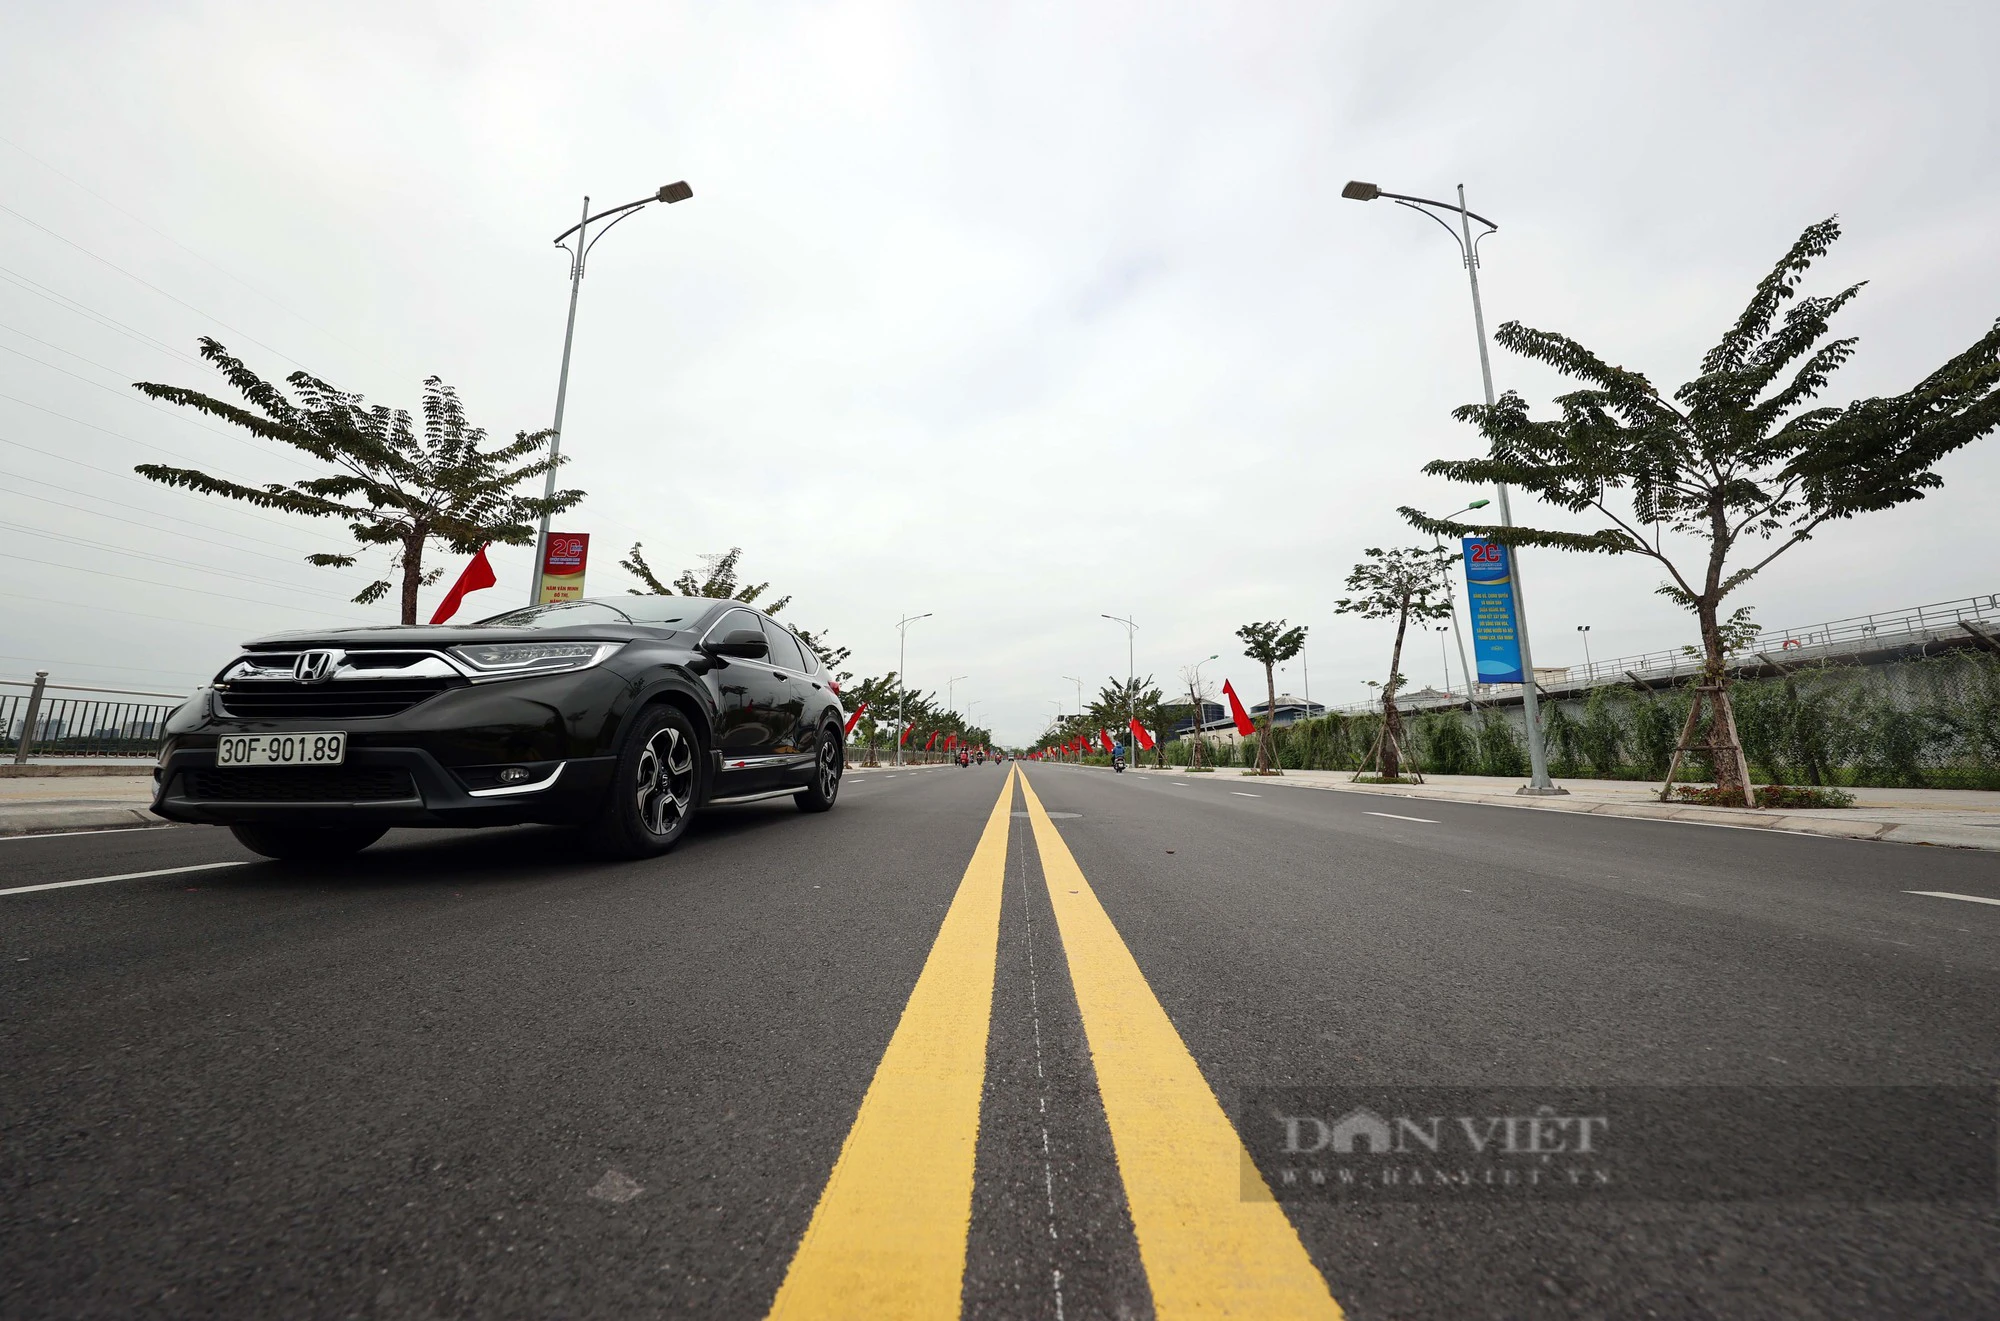 Con đường 500 tỷ đồng nối trung tâm Hà Nội tới cửa ngõ cao tốc Pháp Vân - Cầu Giẽ - Ảnh 11.